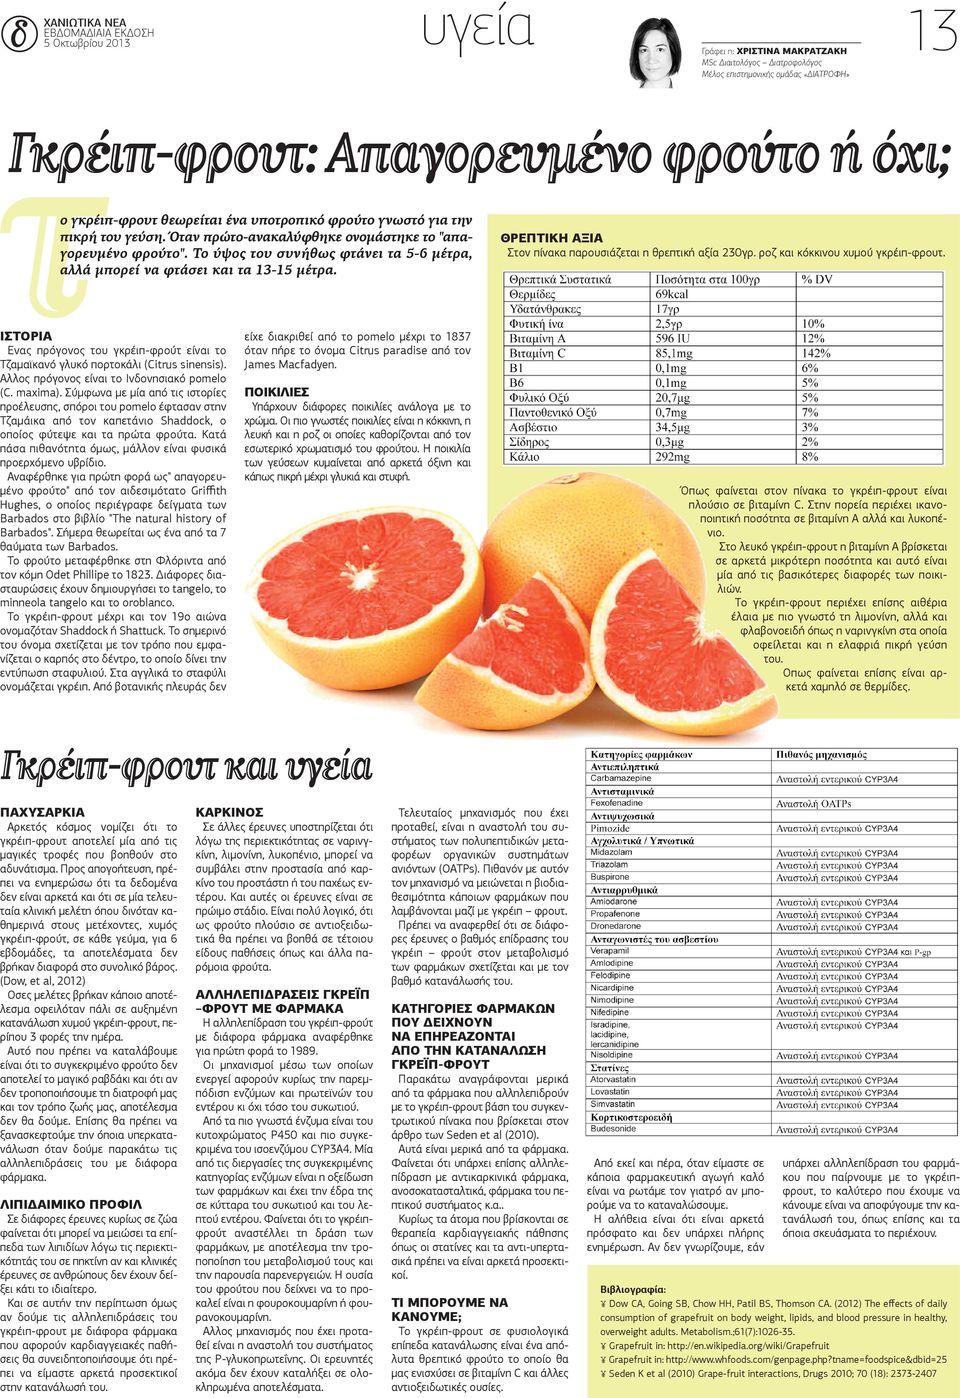 ΘρεπτικΗ αξια Στον πίνακα παρουσιάζεται η θρεπτική αξία 230γρ. ροζ και κόκκινου χυμού γκρέιπ-φρουτ. ιστορια Ενας πρόγονος του γκρέιπ-φρούτ είναι το Τζαμαϊκανό γλυκό πορτοκάλι (Citrus sinensis).